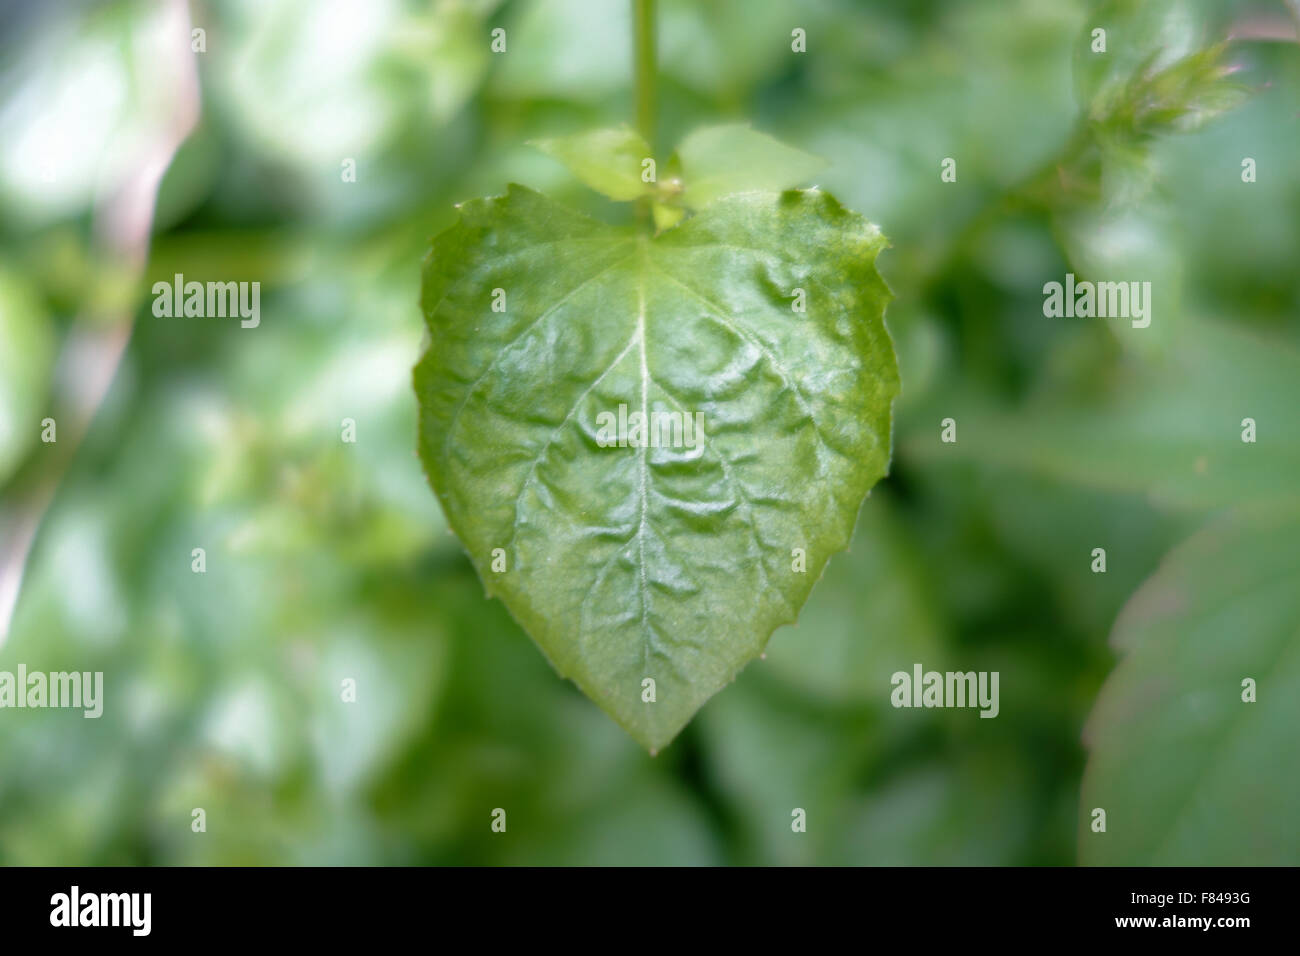 Close-up de una sola hoja en forma de corazón de Bellflower [Campanula]. Foto de stock